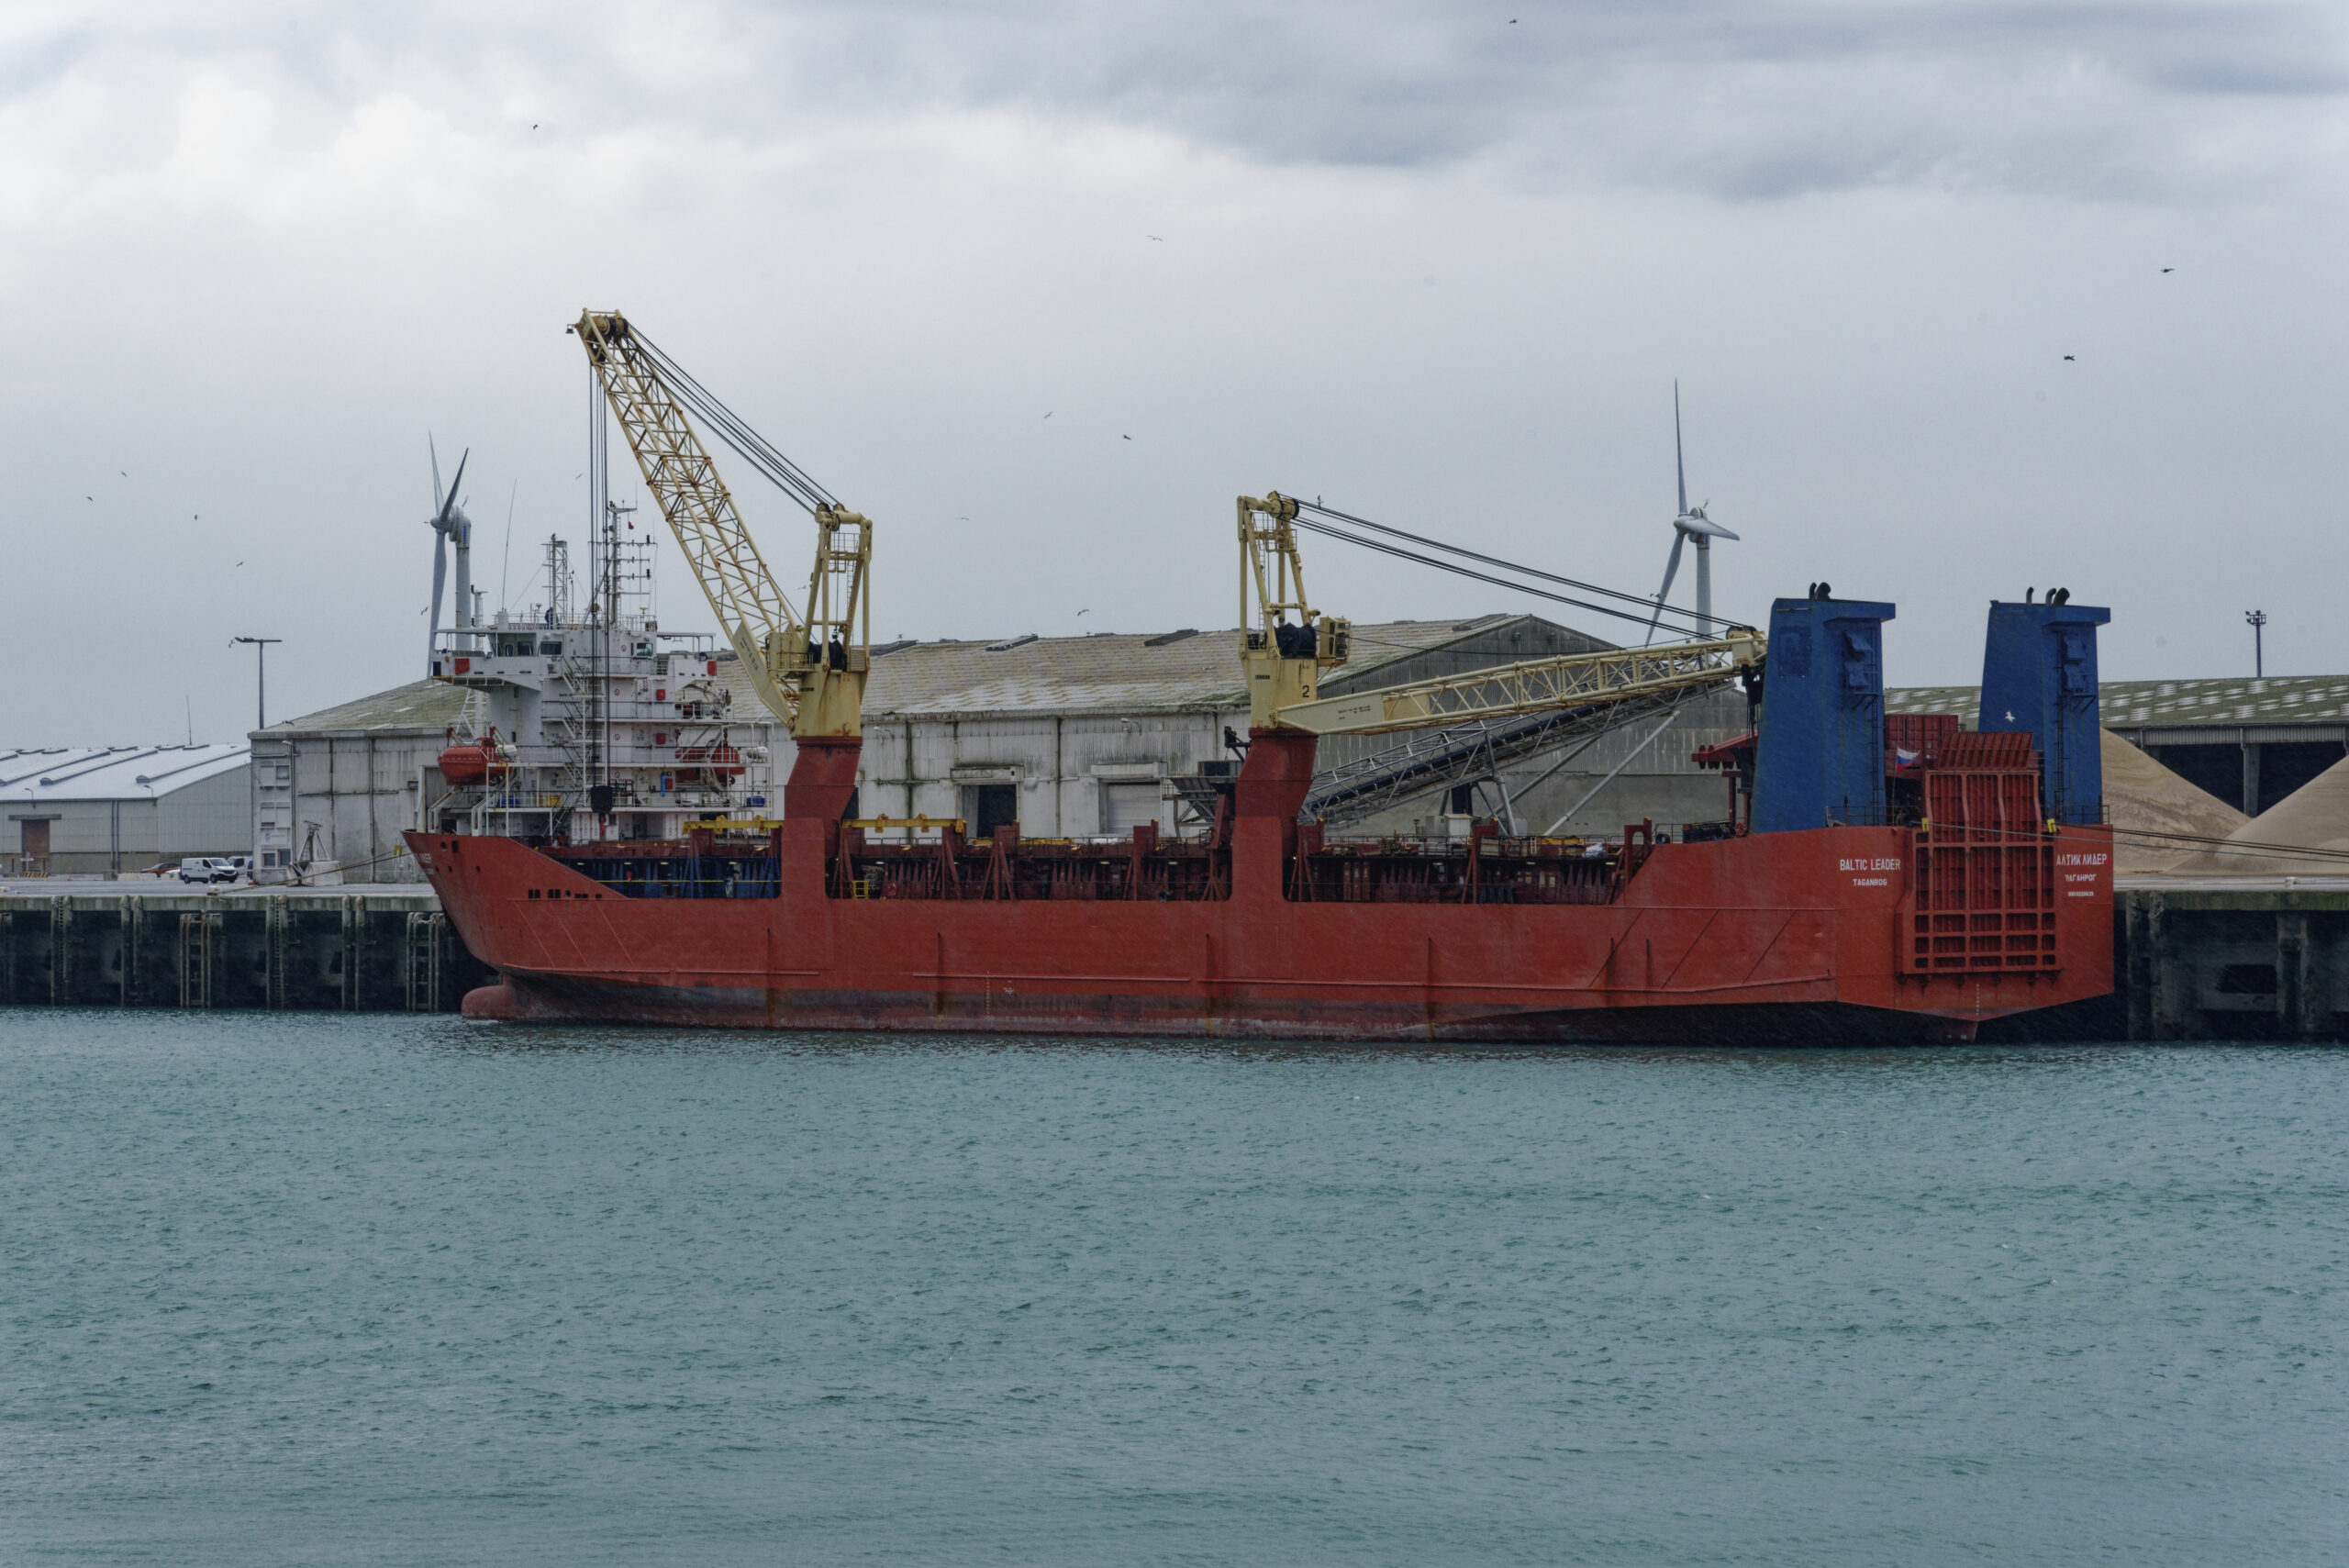 Le port de commerce : Le navire RUSSE consigné en sanction de la guerre en UKRAINE